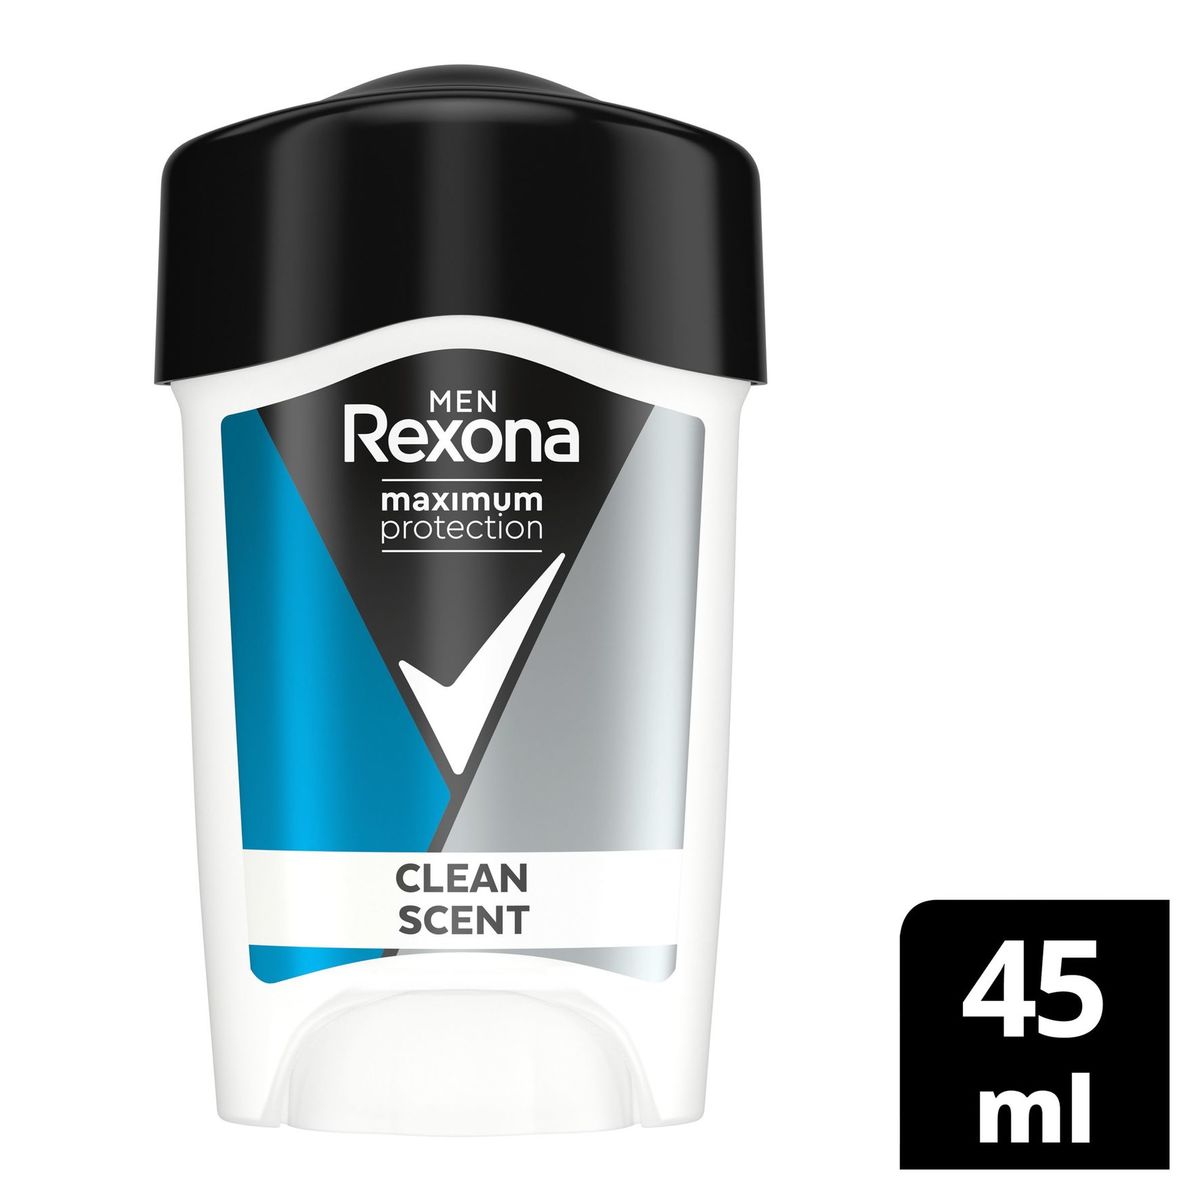 Rexona Men Cream Deodorant Max Pro Clean Scent 45ml